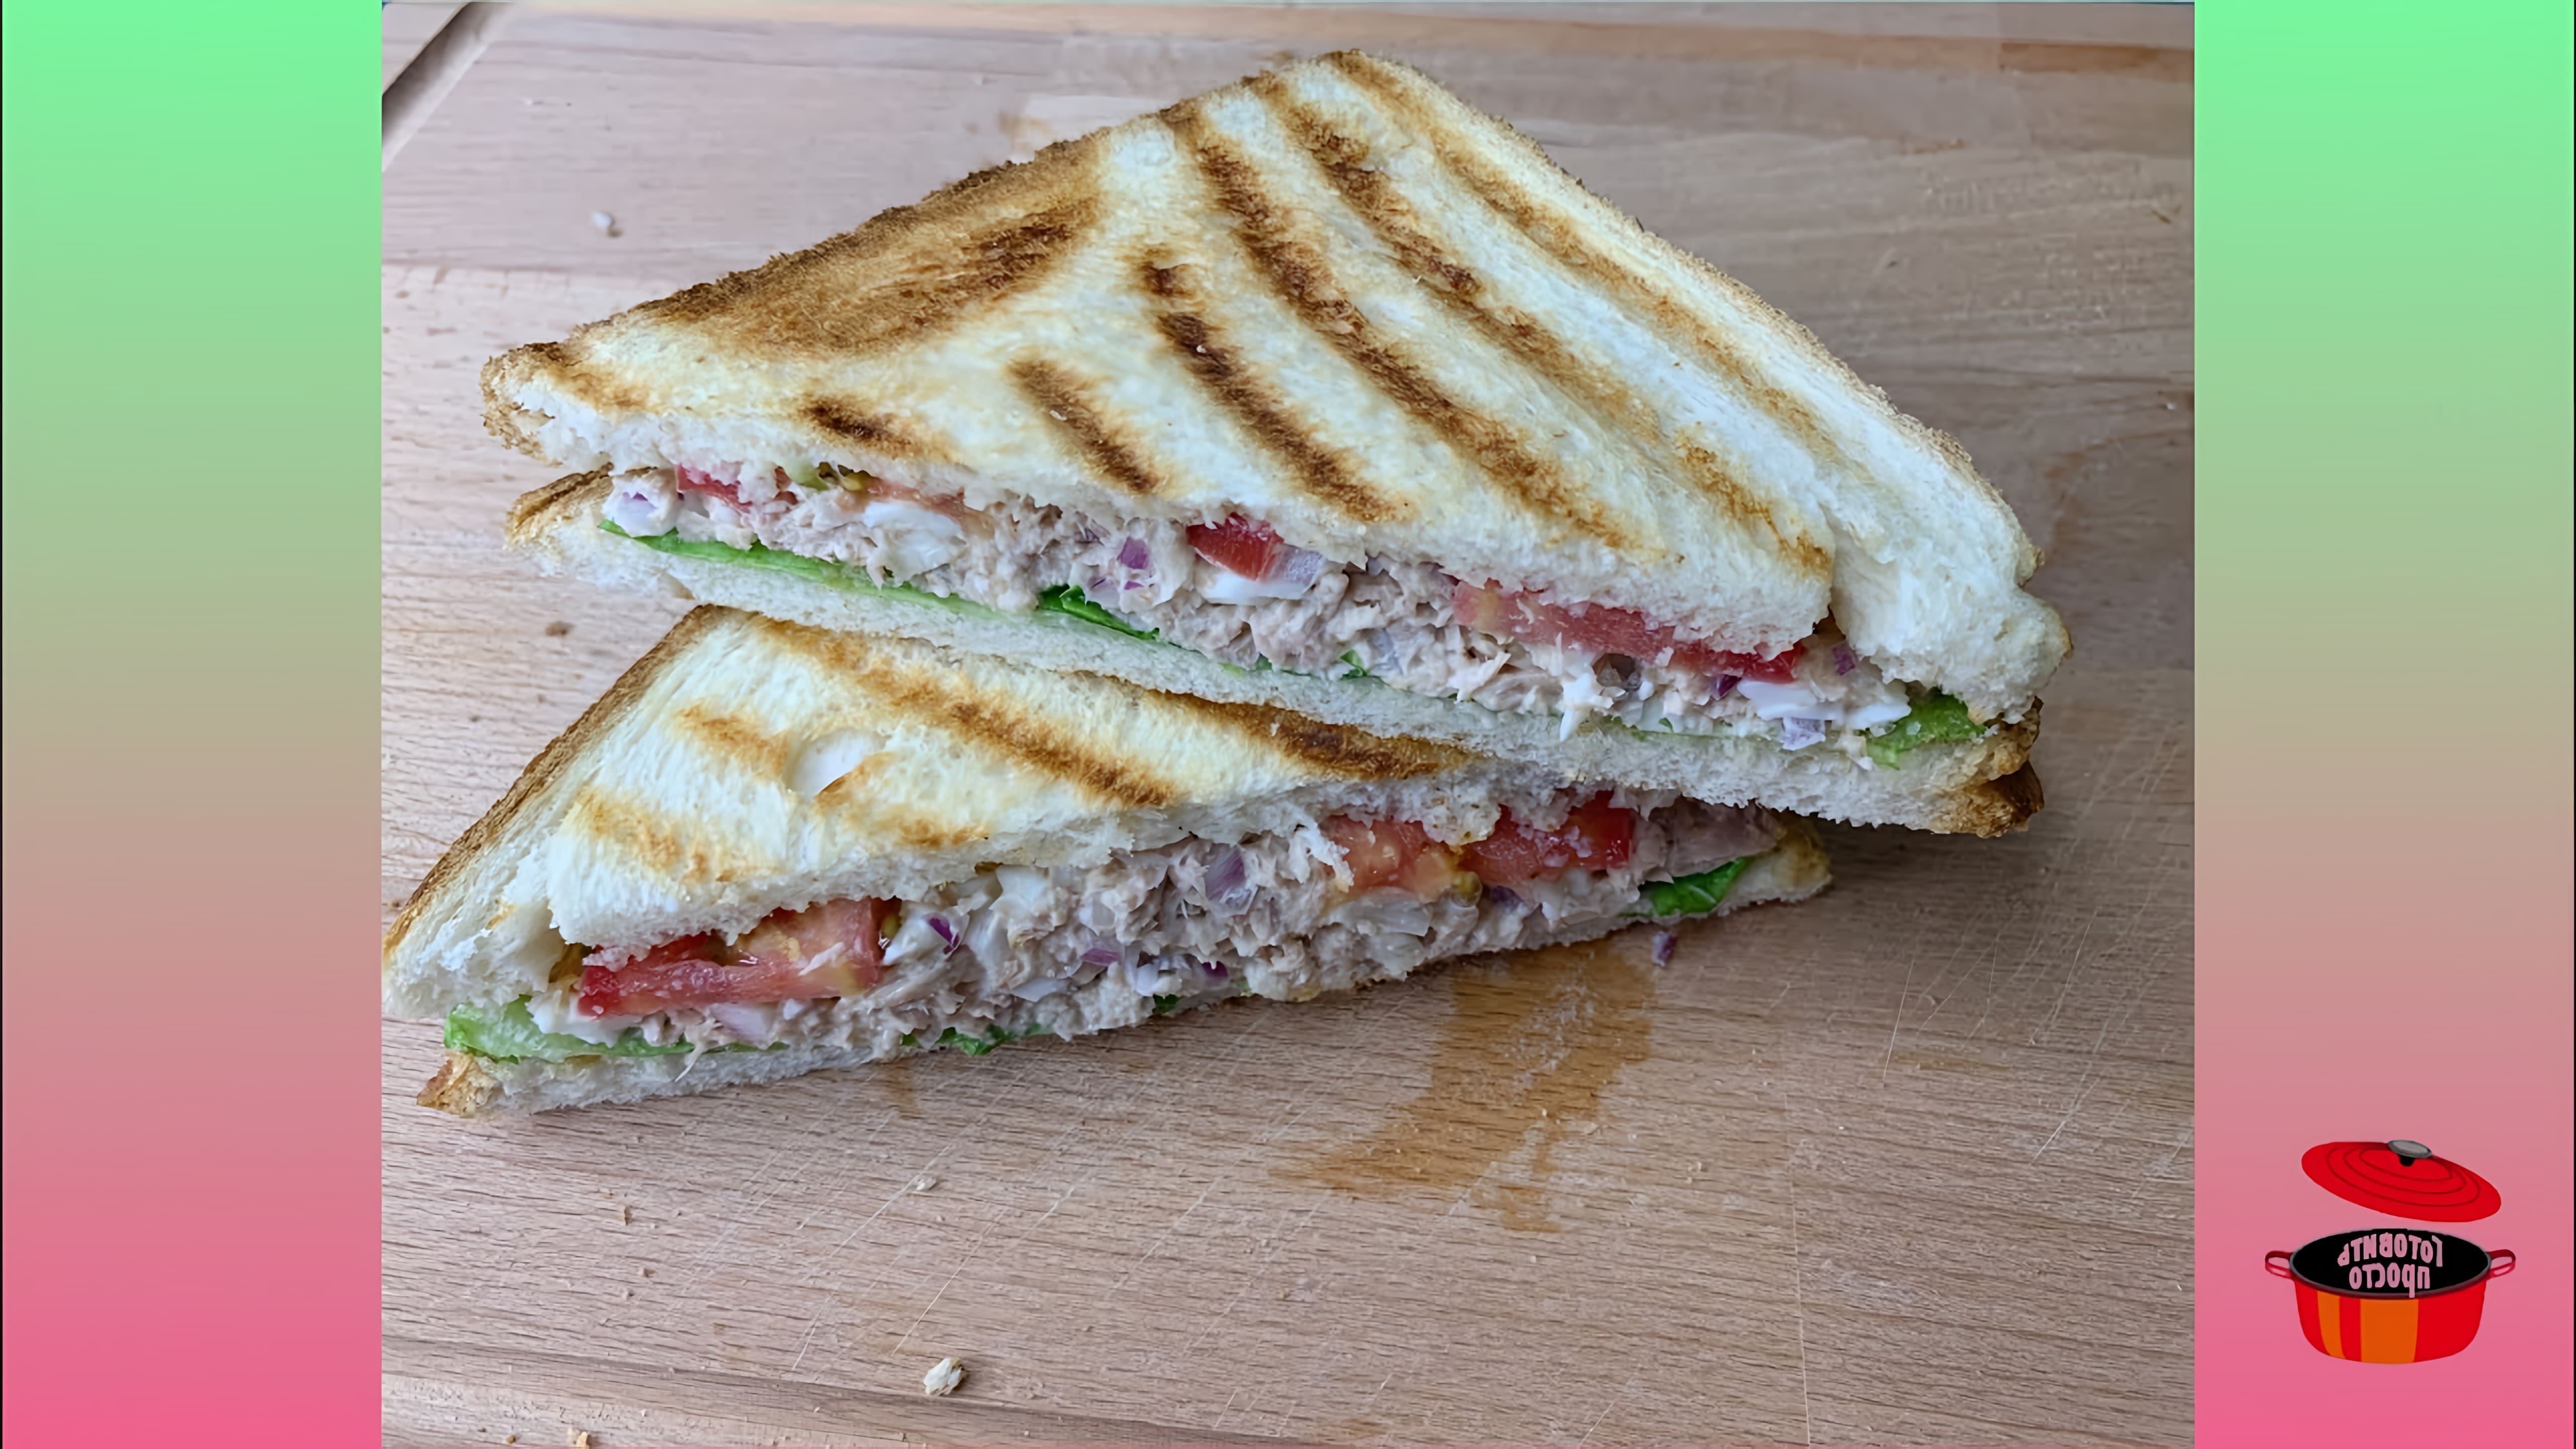 Вкуснейший сэндвич с тунцом - это видео-ролик, который показывает процесс приготовления вкусного и питательного сэндвича с тунцом